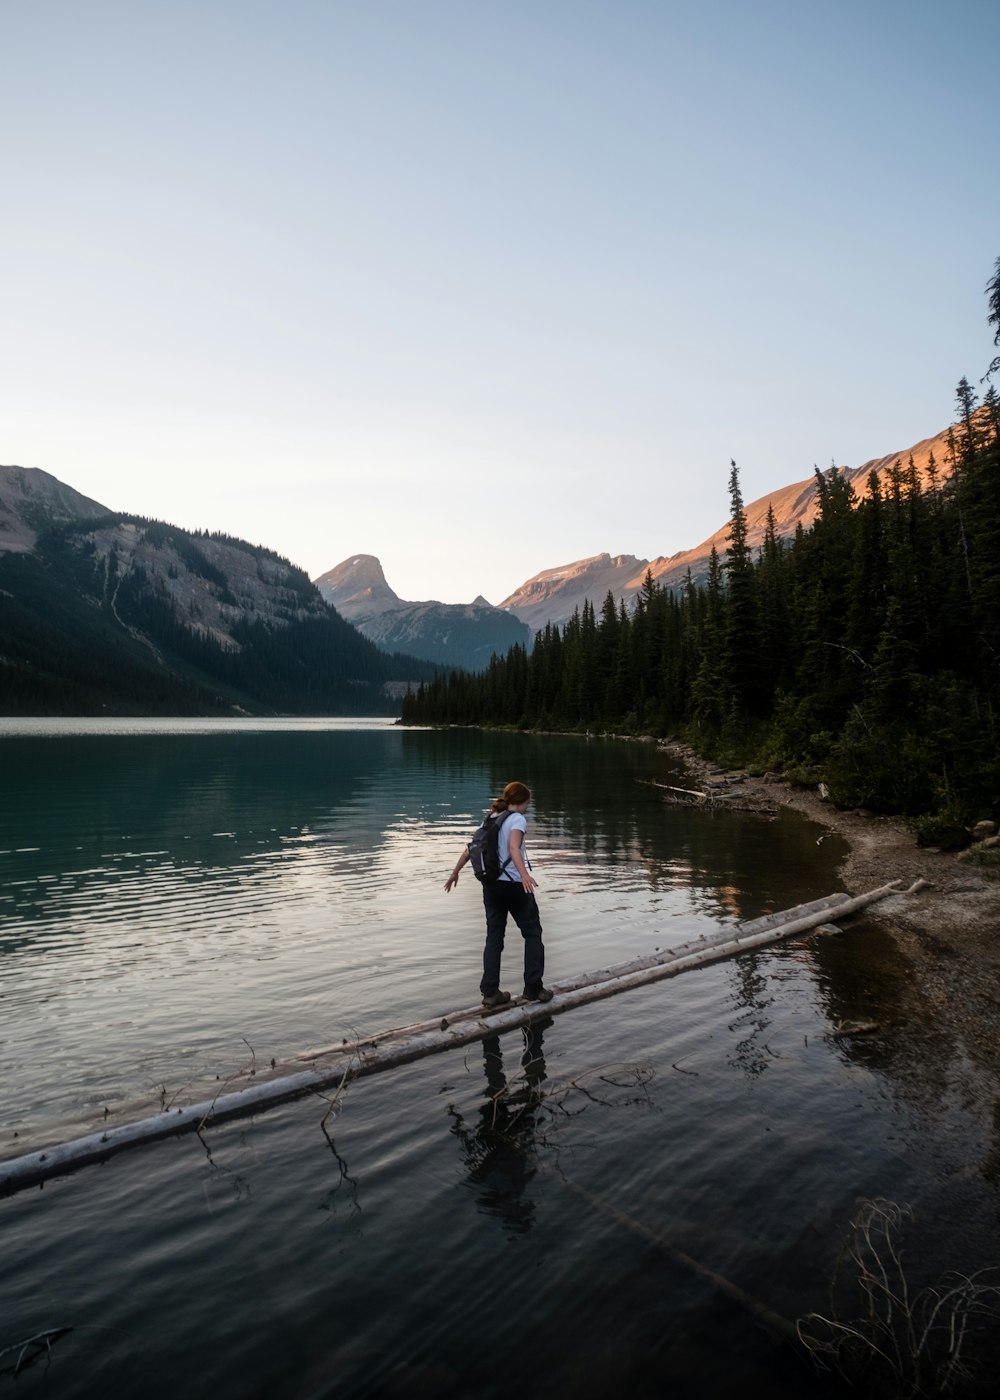 Un hombre parado en un muelle sobre un lago con montañas al fondo